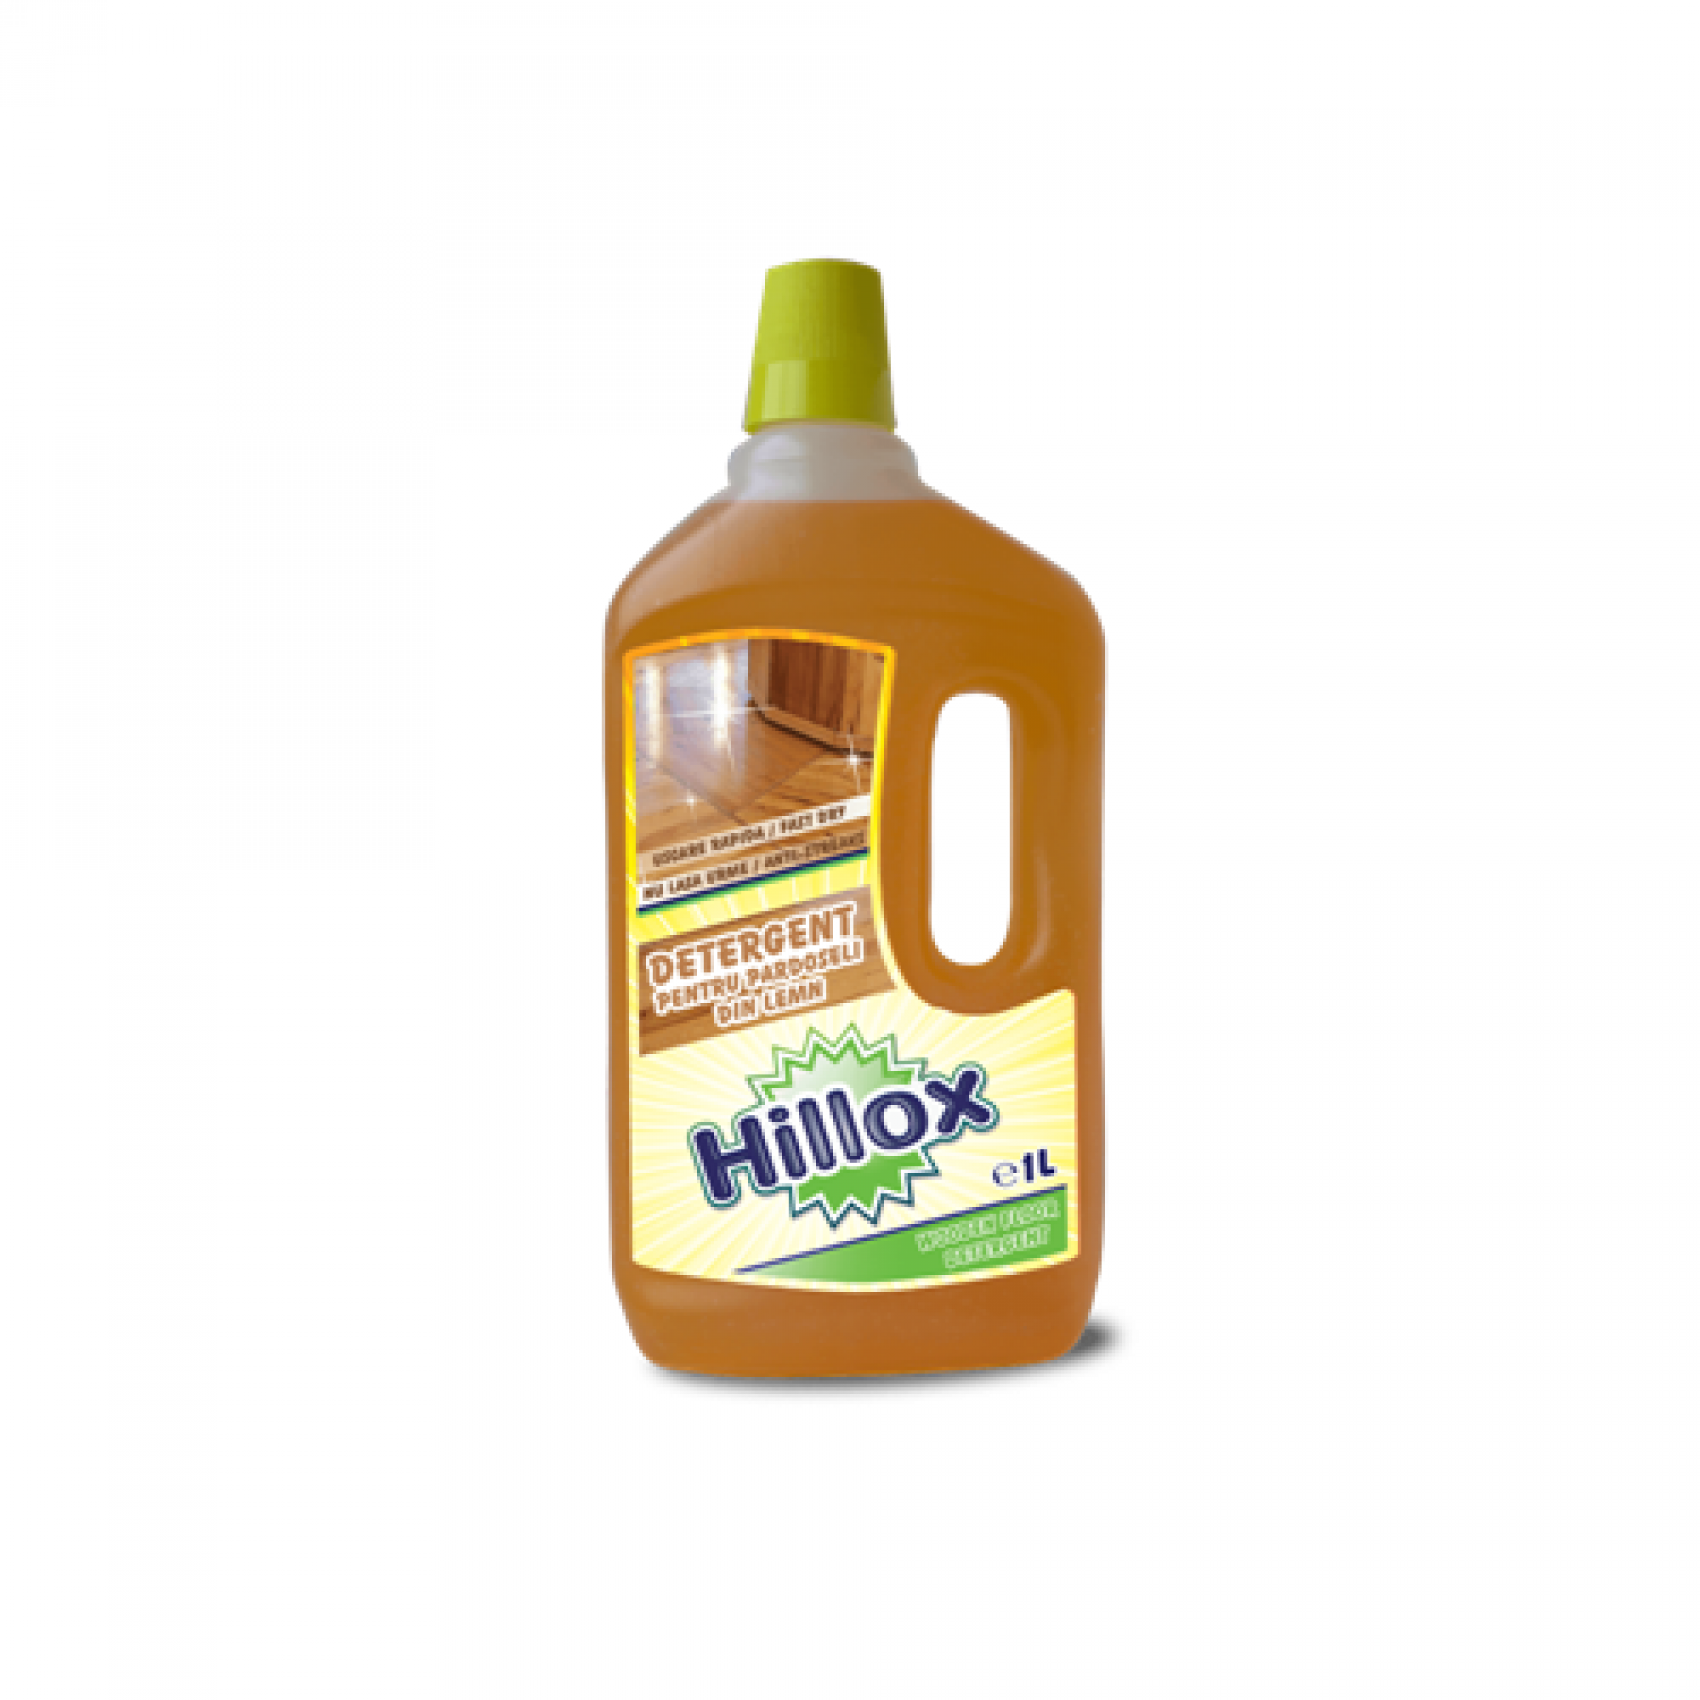 Detergent parchet Hillox - flacon 1 litru